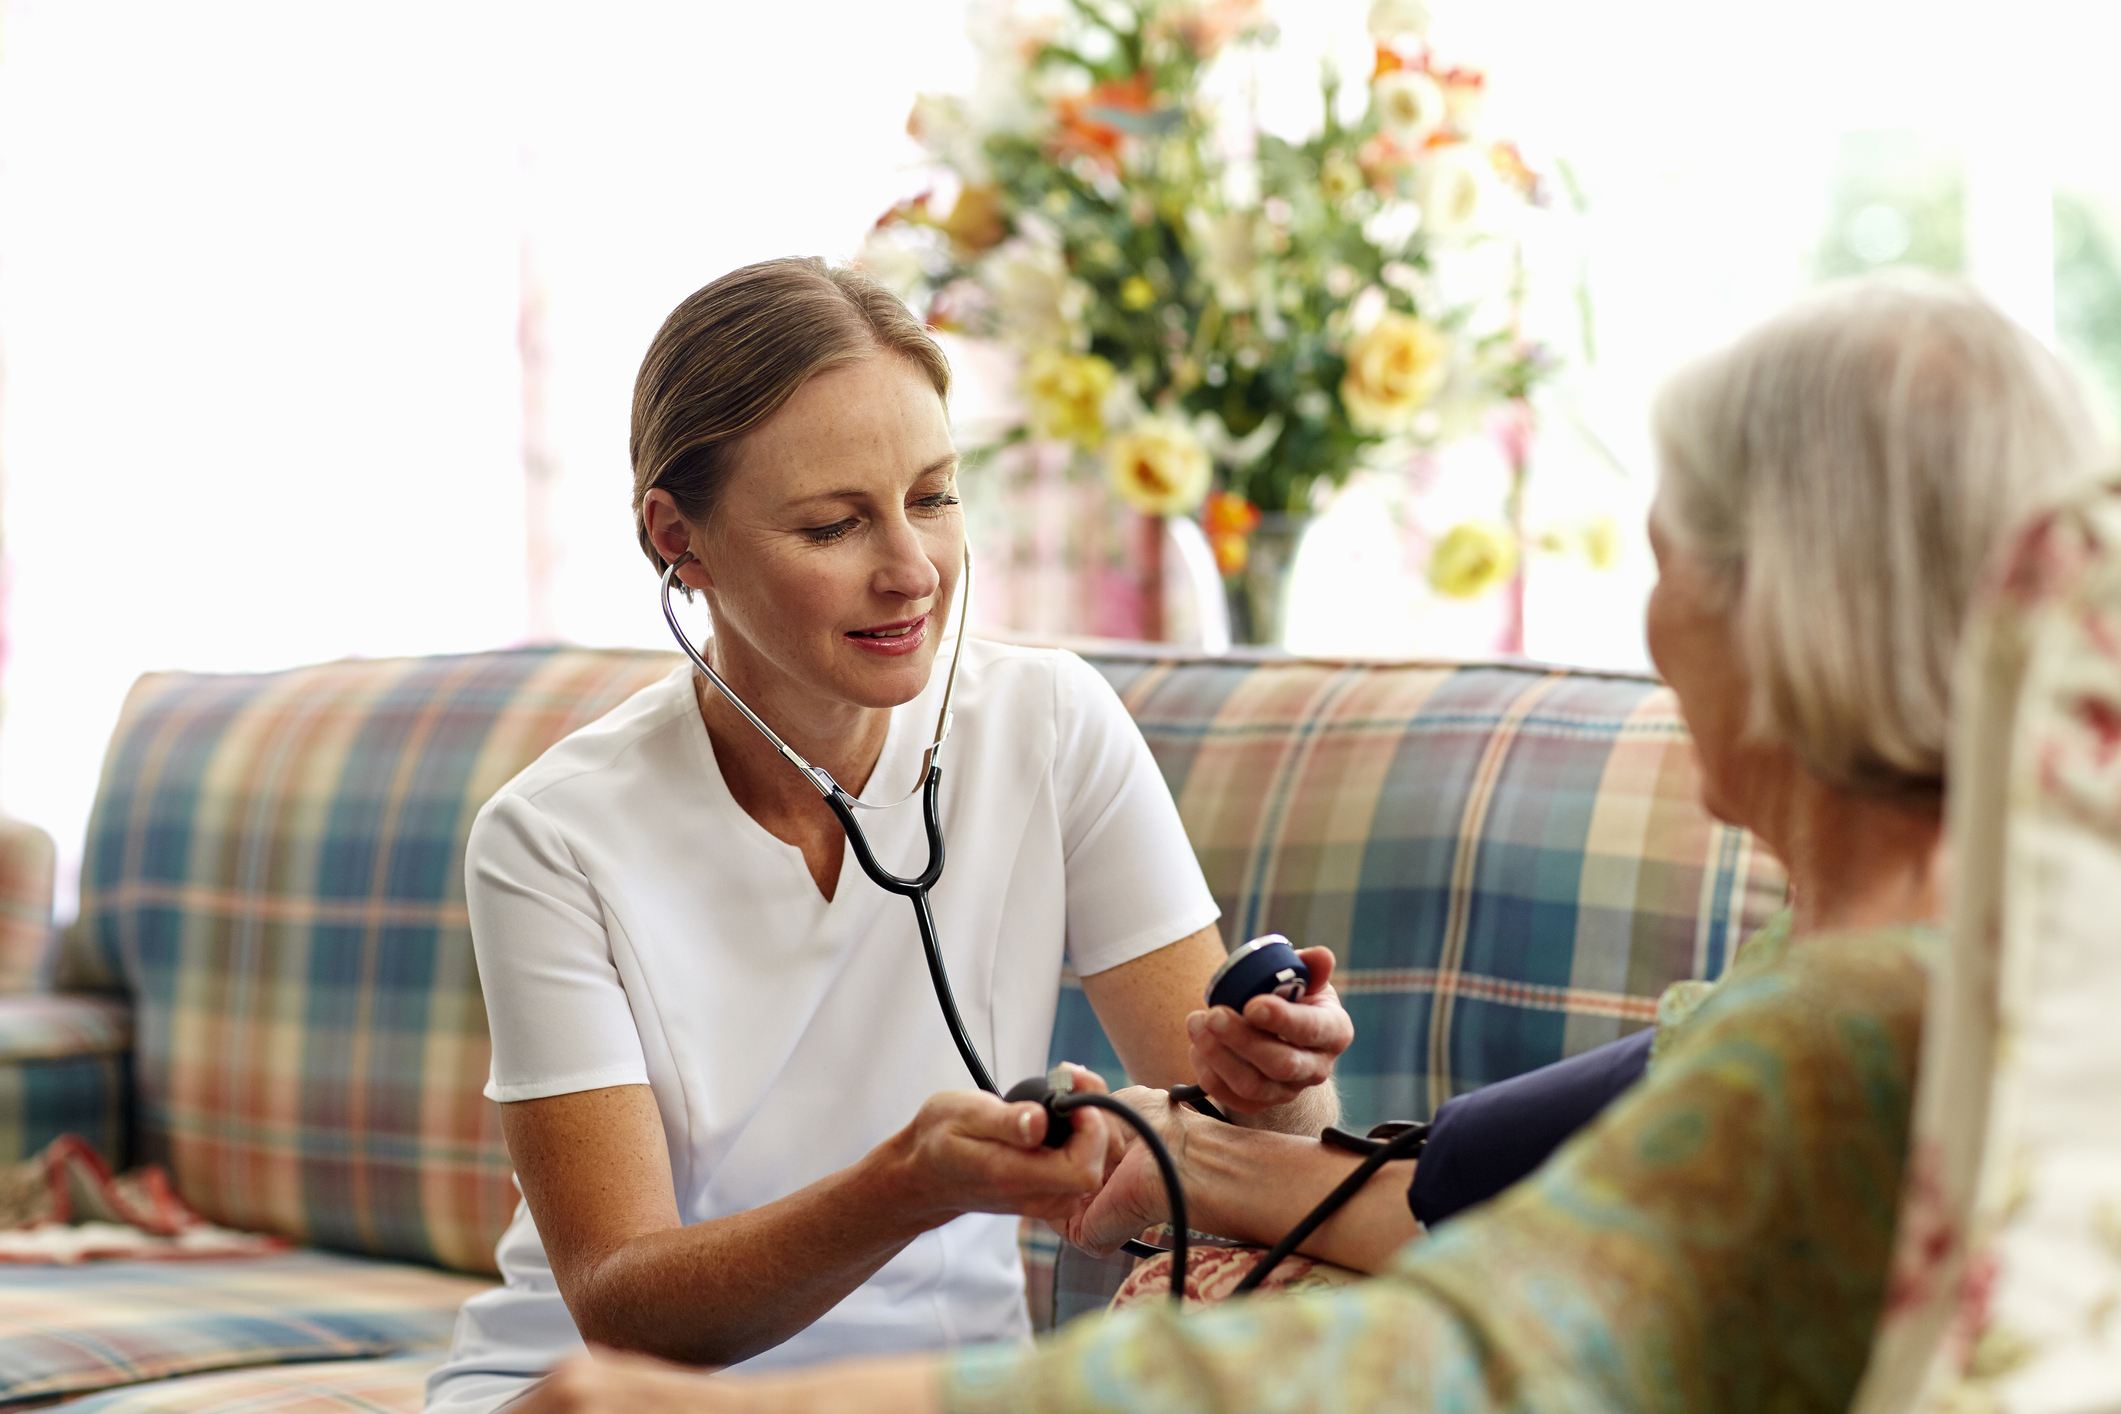 Caretaker measuring senior woman's blood pressure